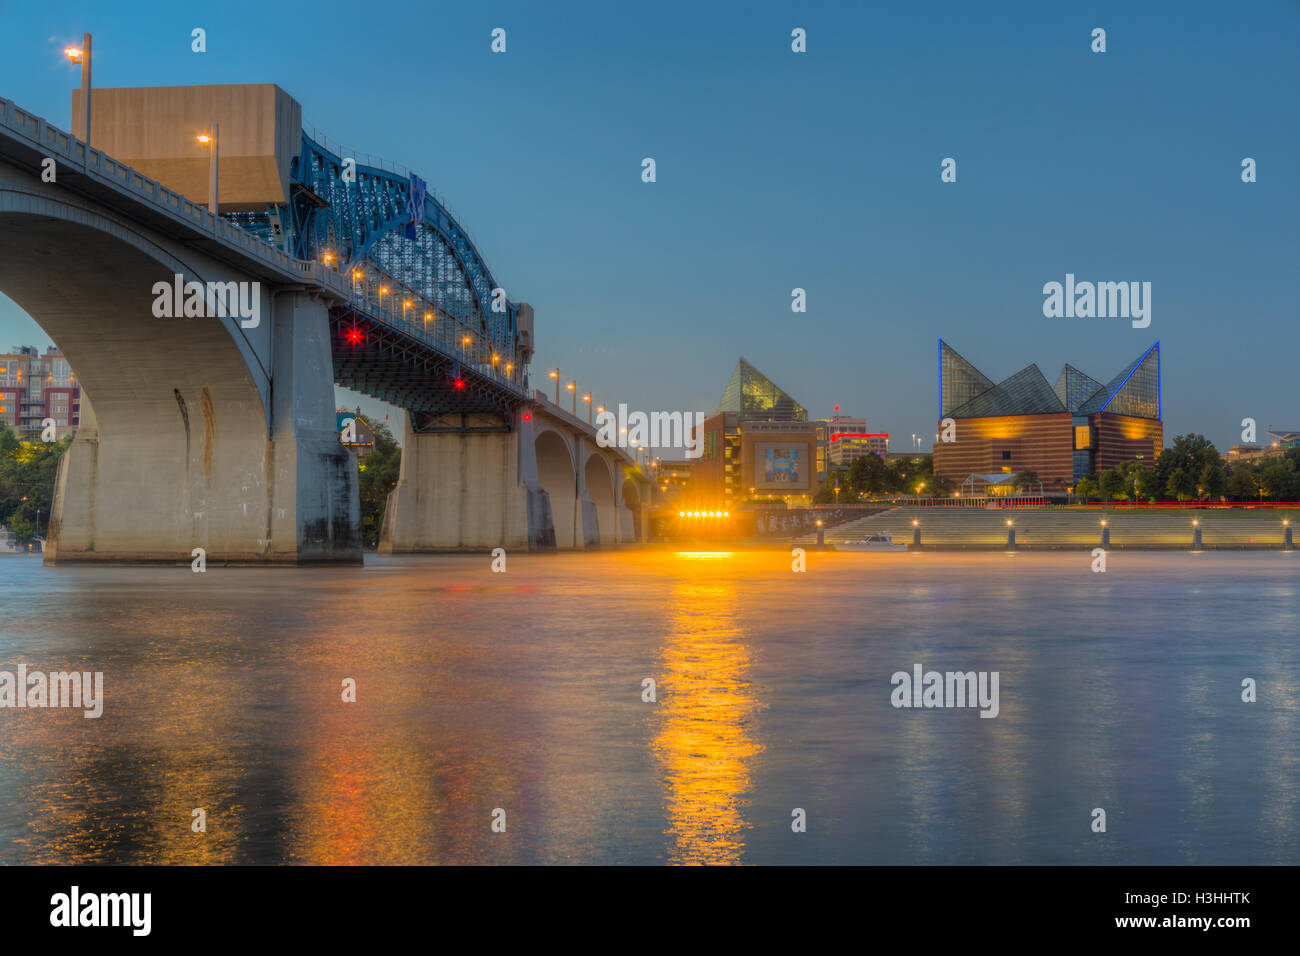 Le chef John Ross (Market Street) bridge et le Tennessee Aquarium sur la rivière Tennessee à l'aube à Chattanooga, Tennessee. Banque D'Images